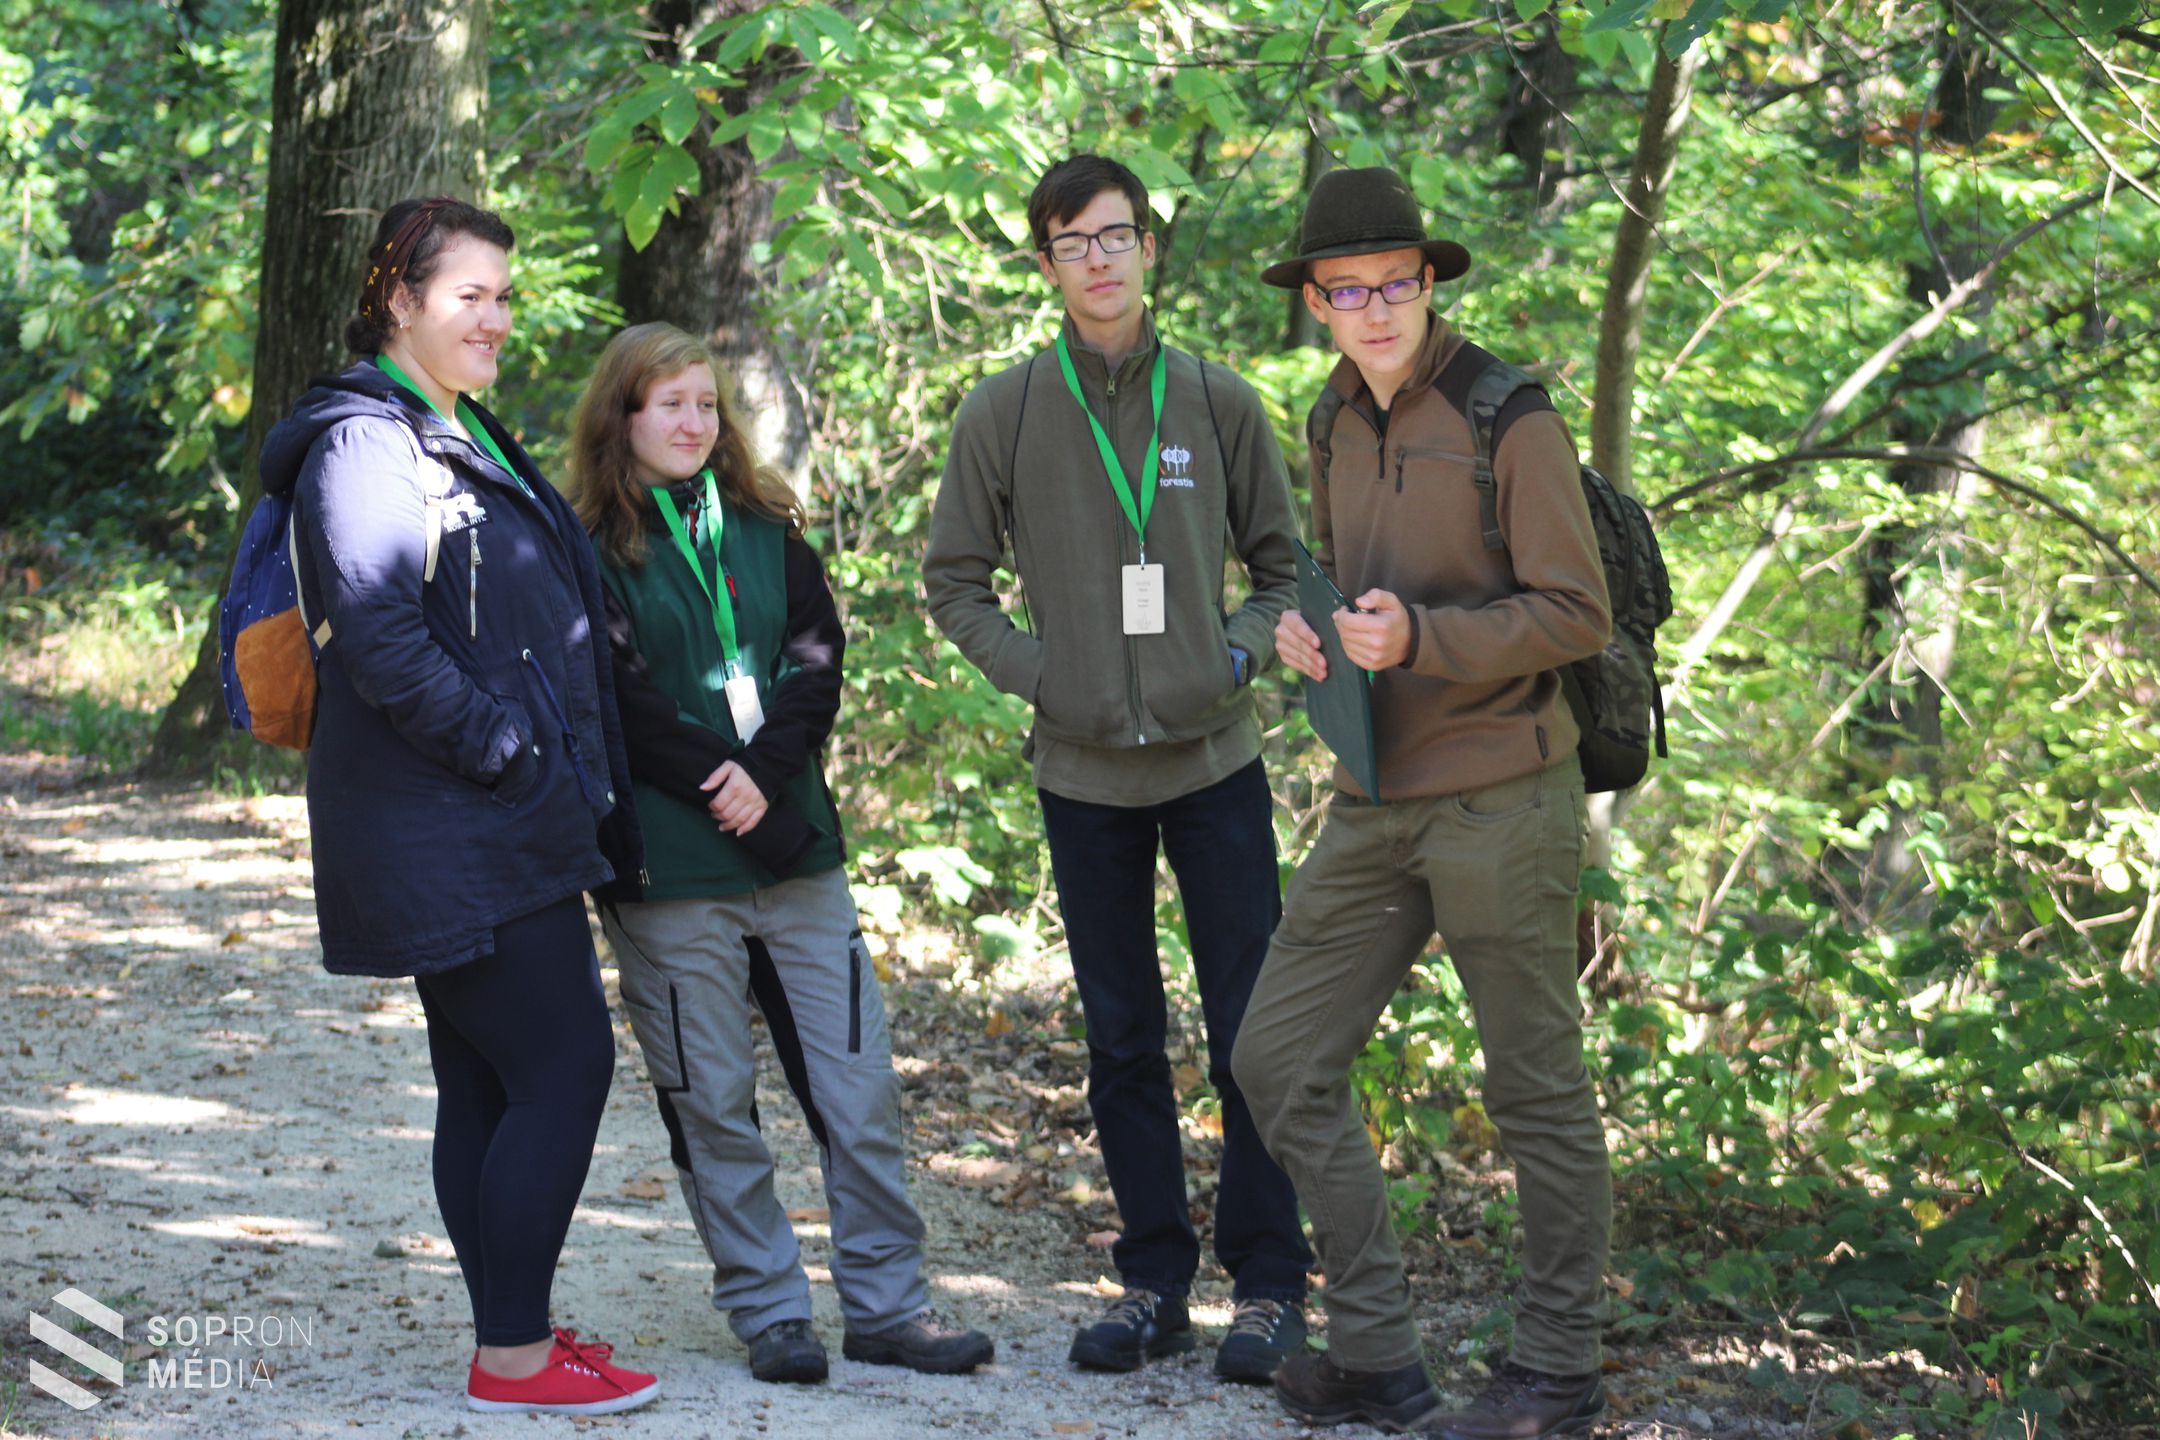 Sopronban rendezték meg az európai erdőismereti tanulmányi versenyt!
(Galéria)